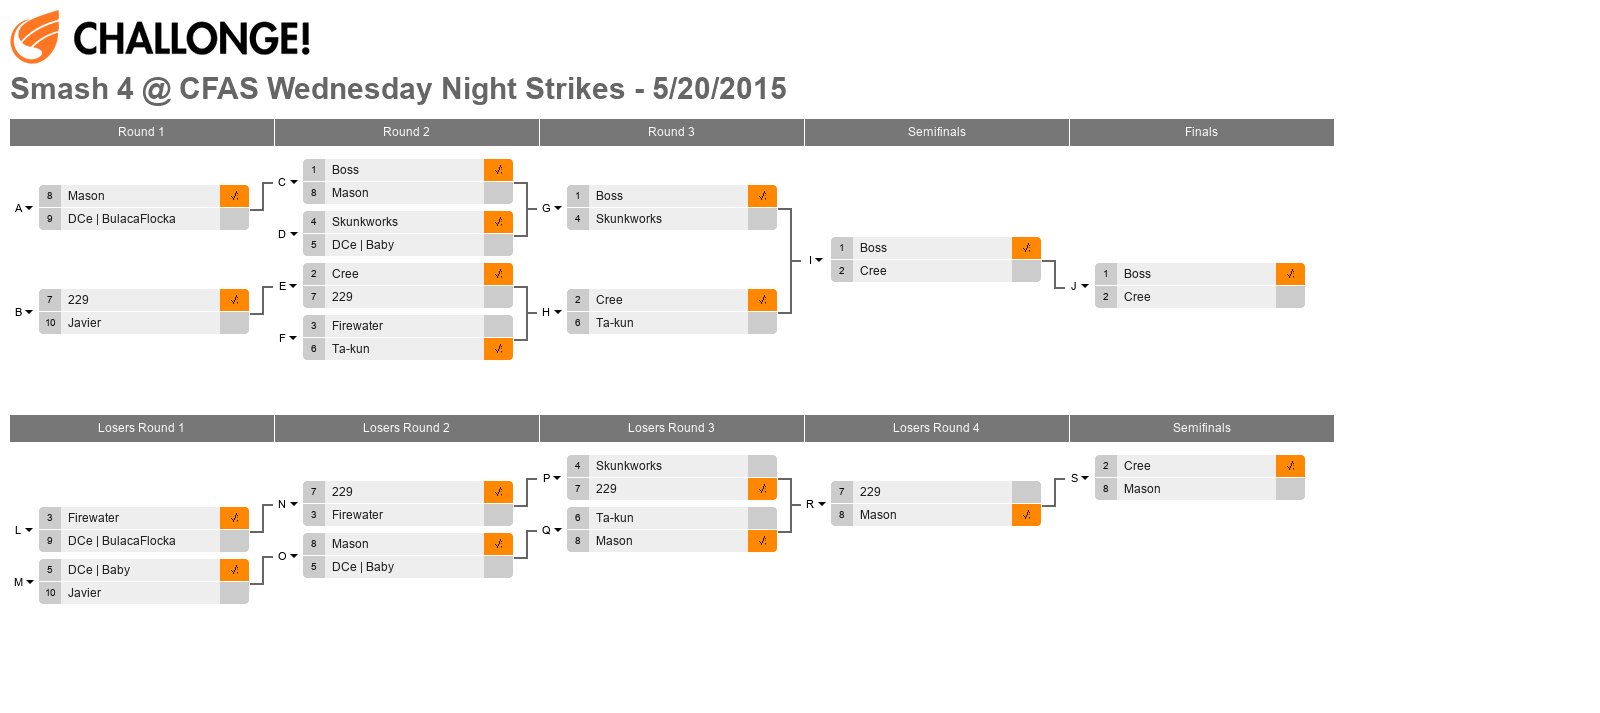 Smash 4 @ CFAS Wednesday Night Strikes - 5/20/2015